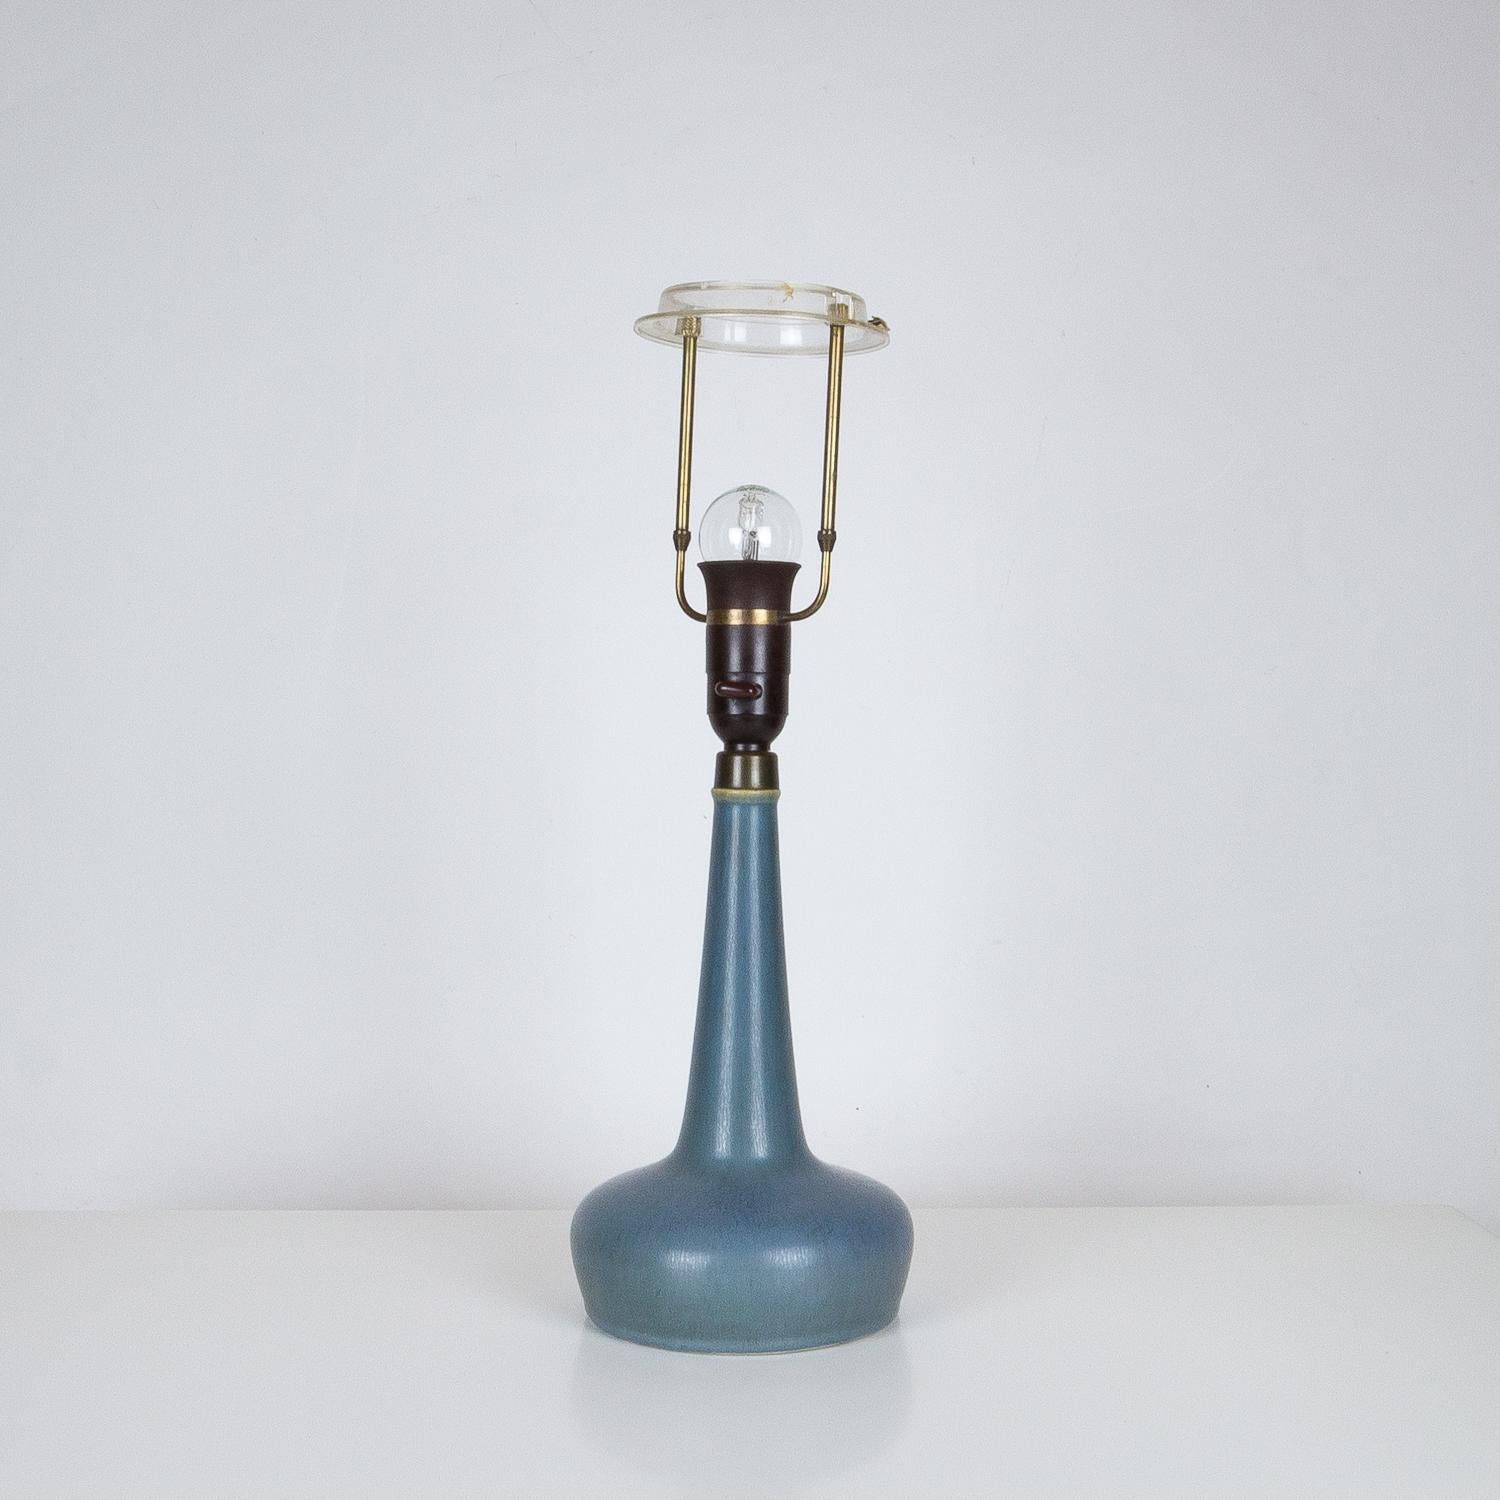 Very Rare Model 311 Table Lamp by Esben Klint & Palshus for Le Klint, Denmark 1